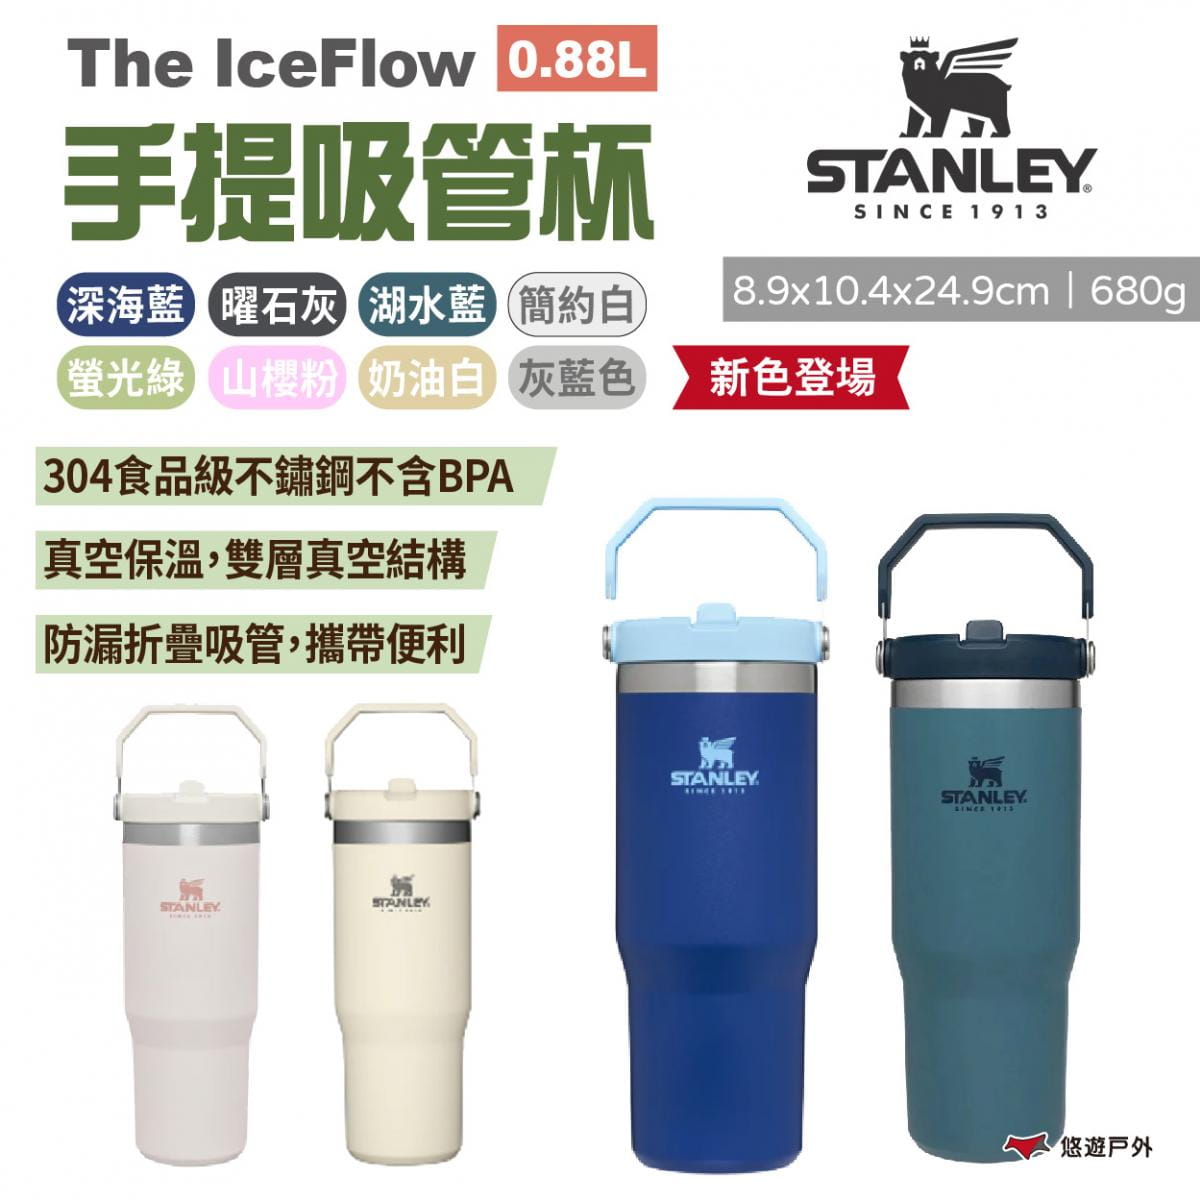 【STANLEY】The IceFlow手提吸管杯 0.88L 多色 悠遊戶外 1